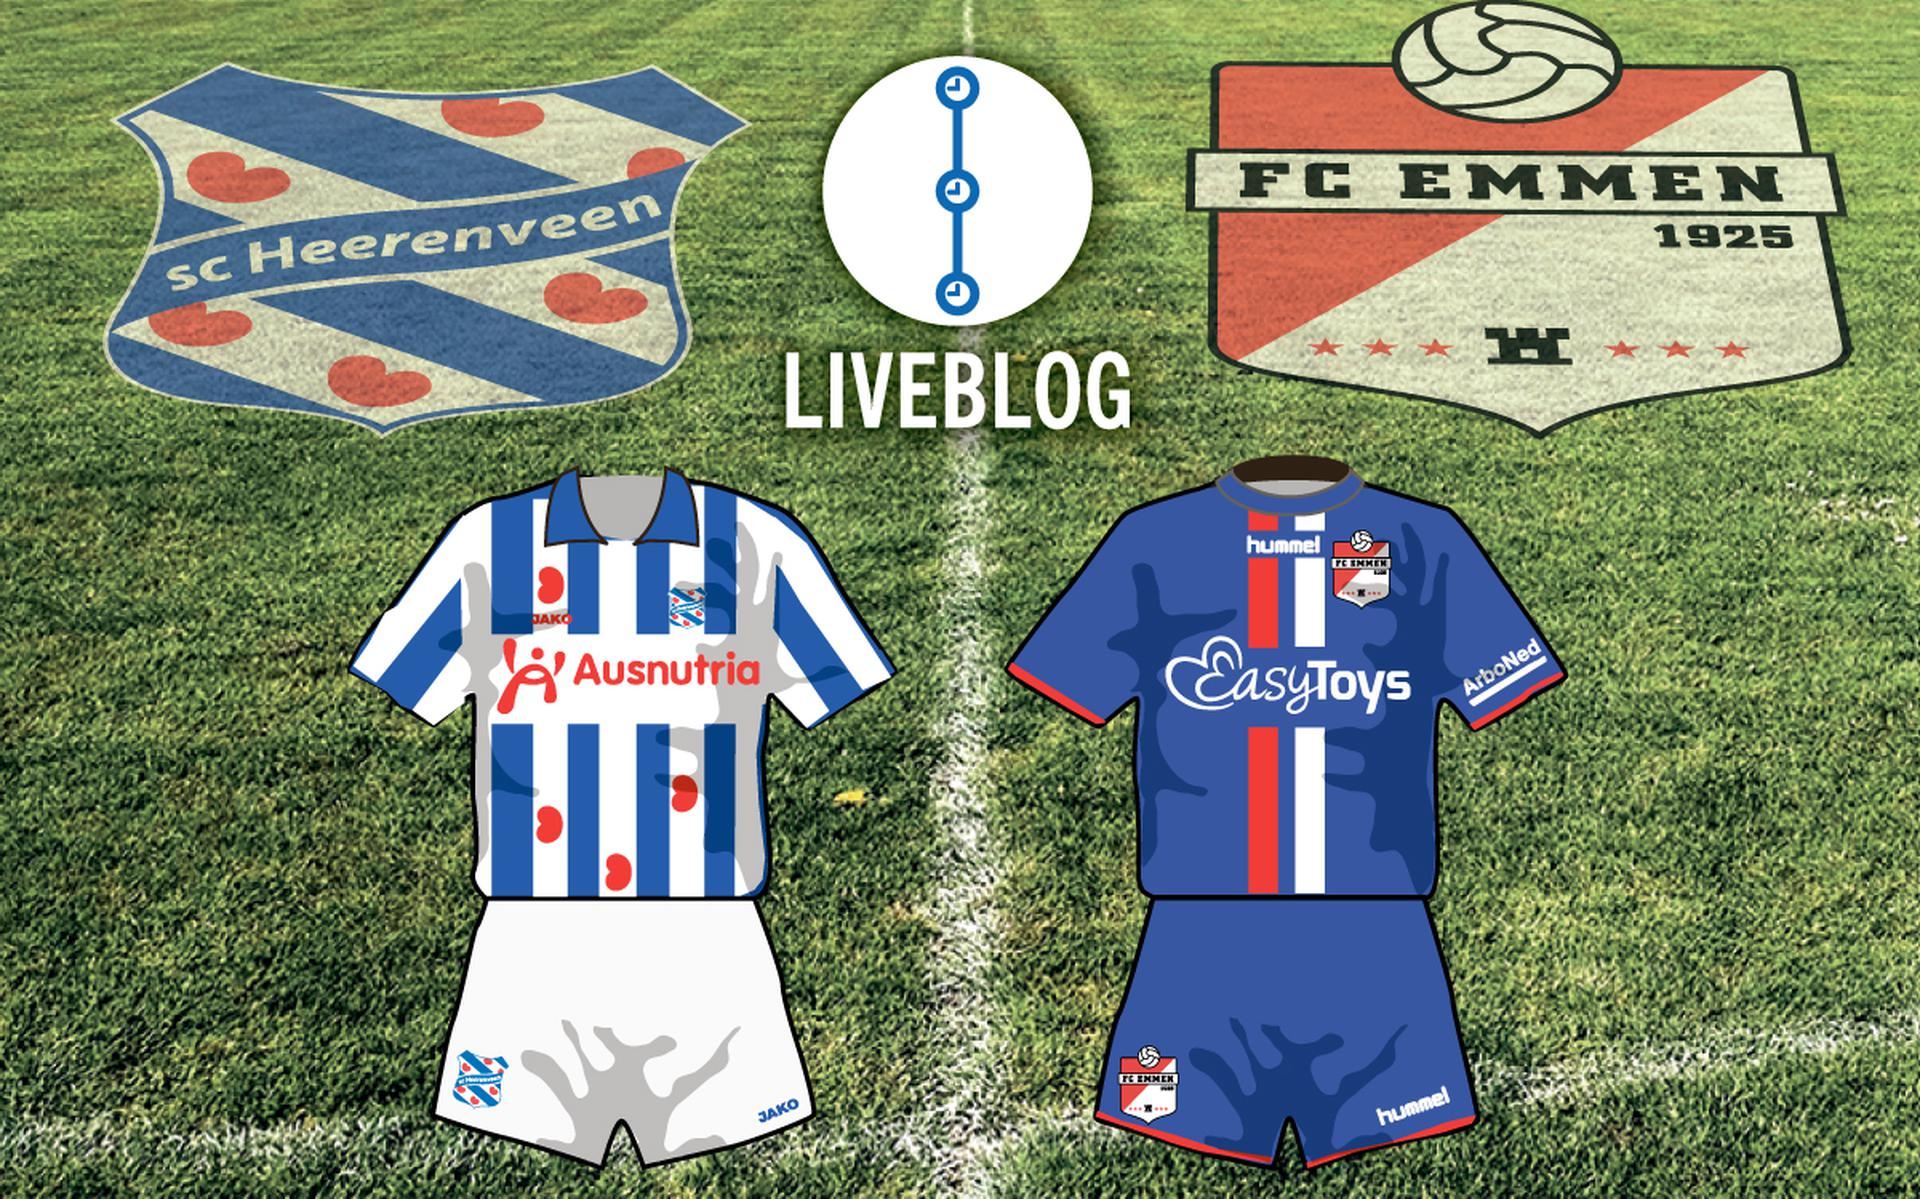 sc Heerenveen - FC Emmen.